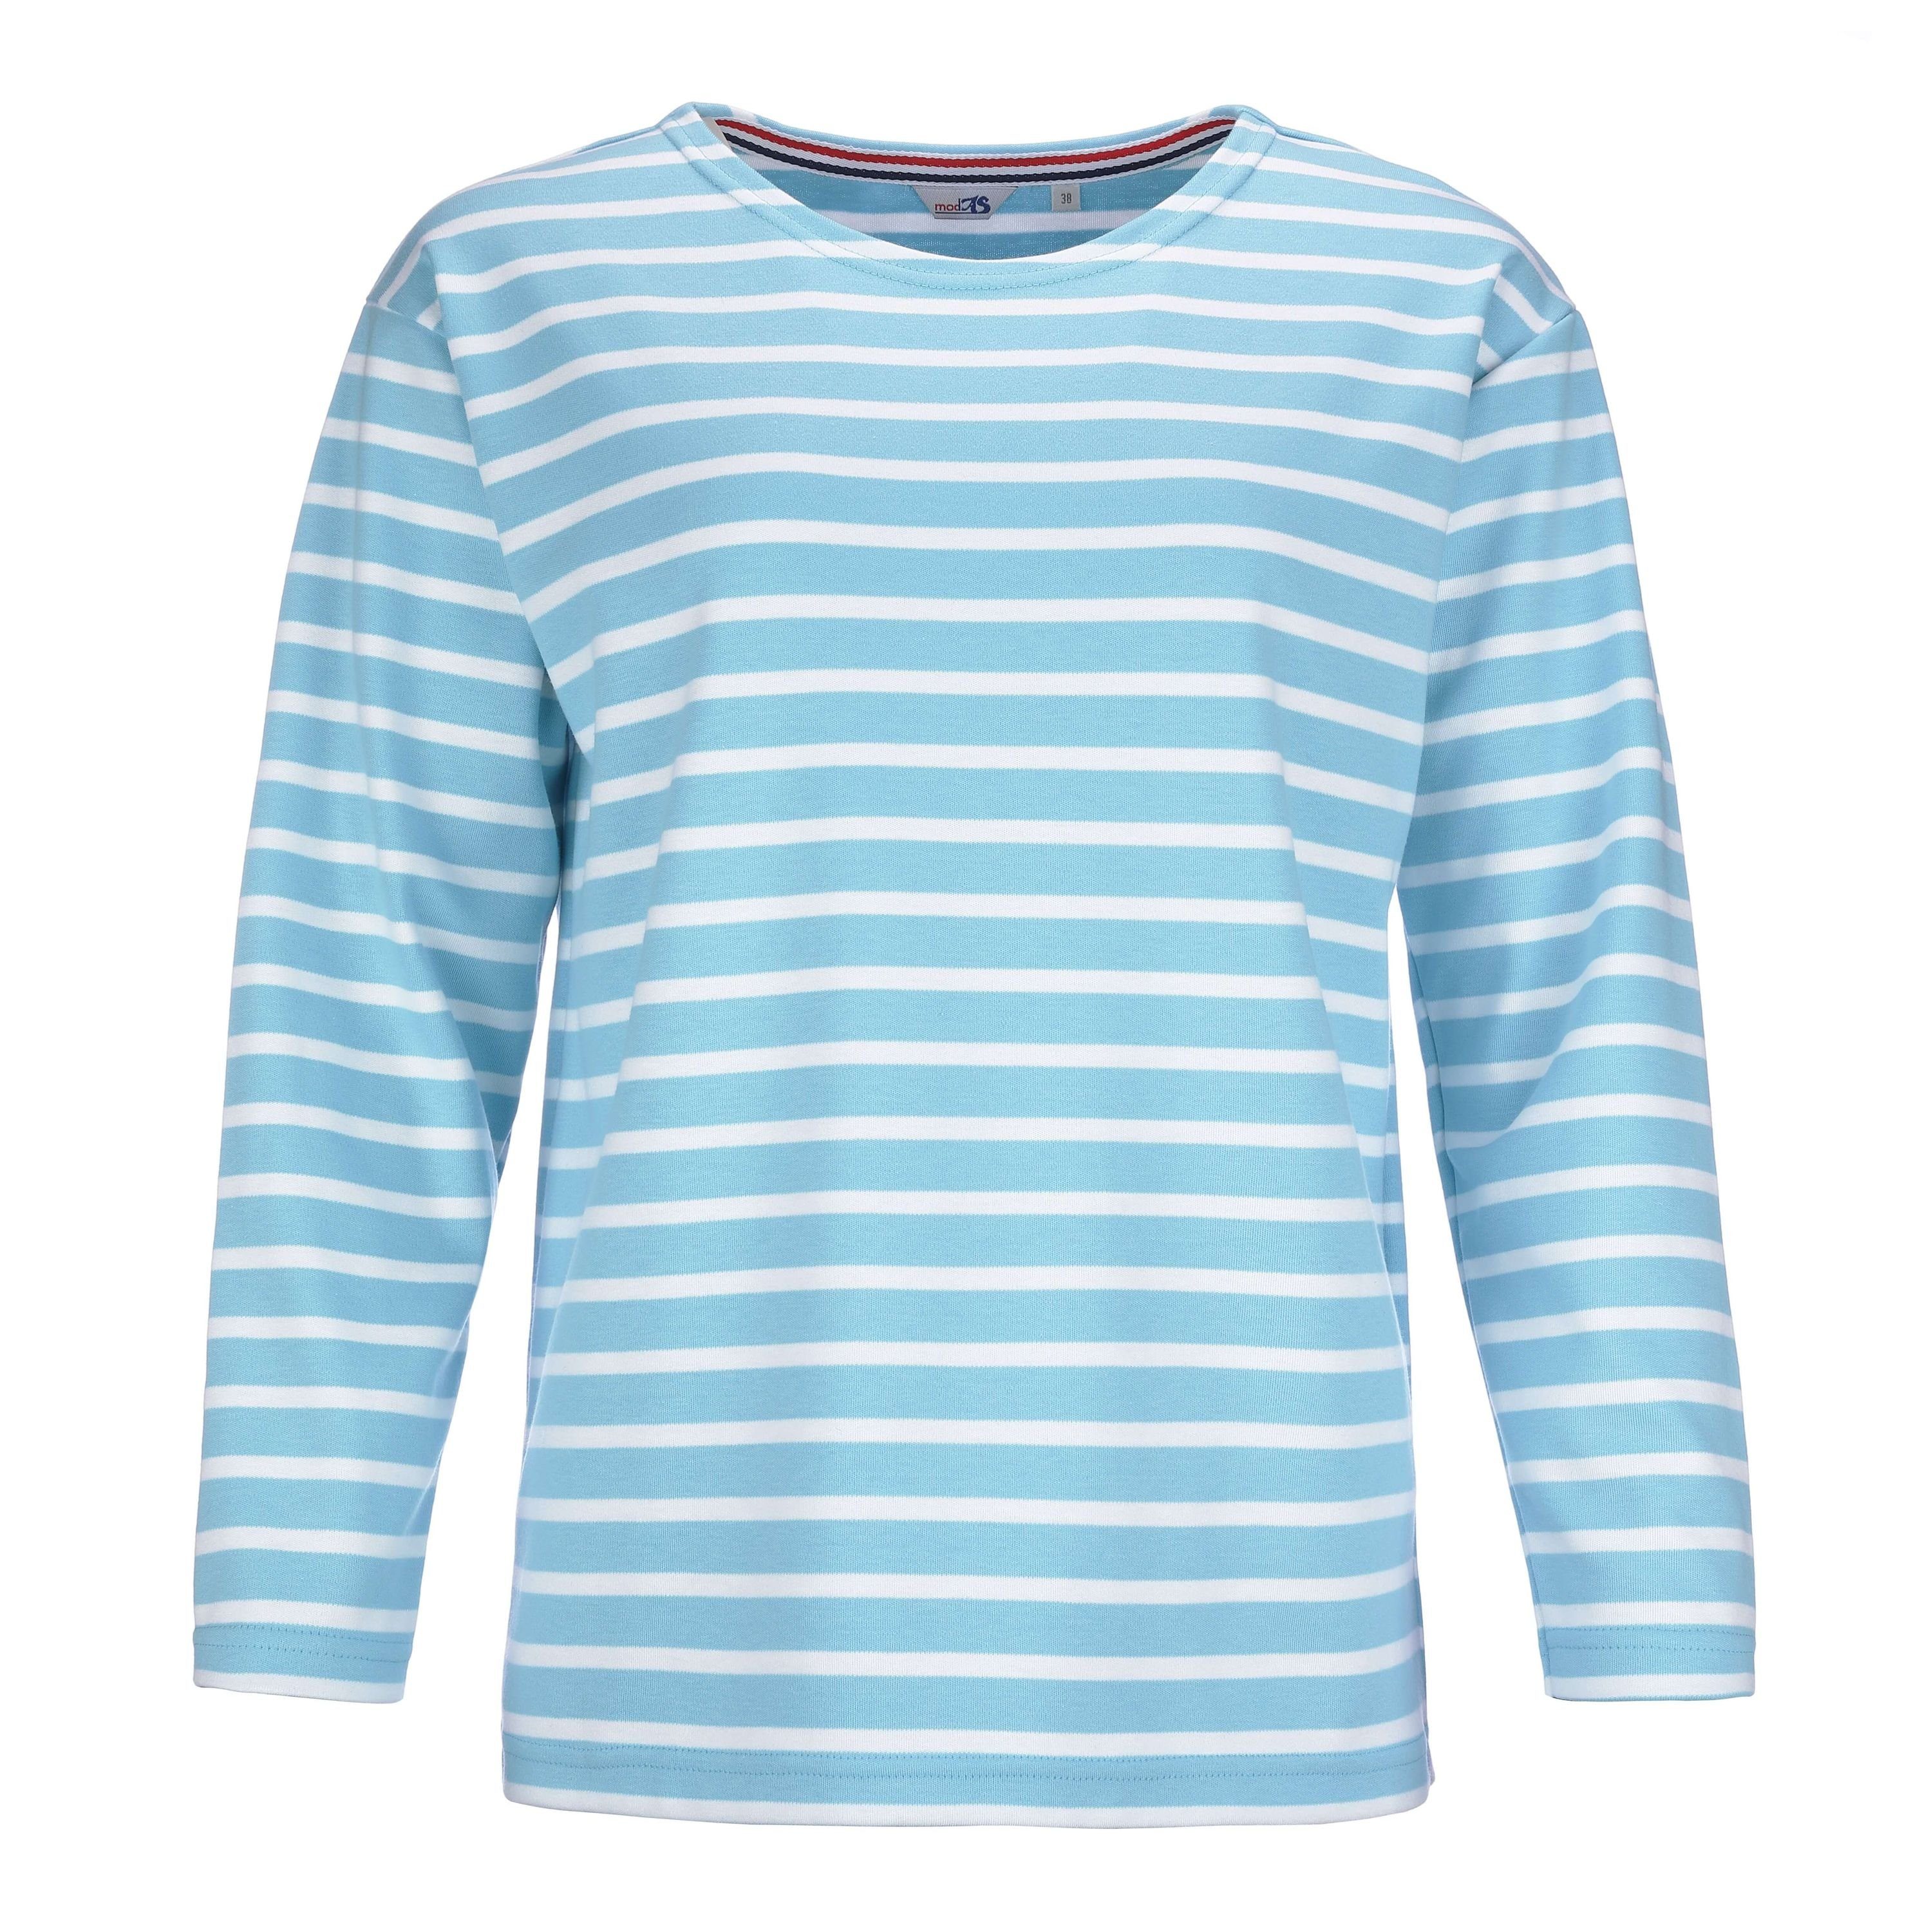 modAS Langarmshirt Damen Bretonisches Basic Shirt mit Streifen - Streifenshirt Baumwolle (18) aqua / weiß